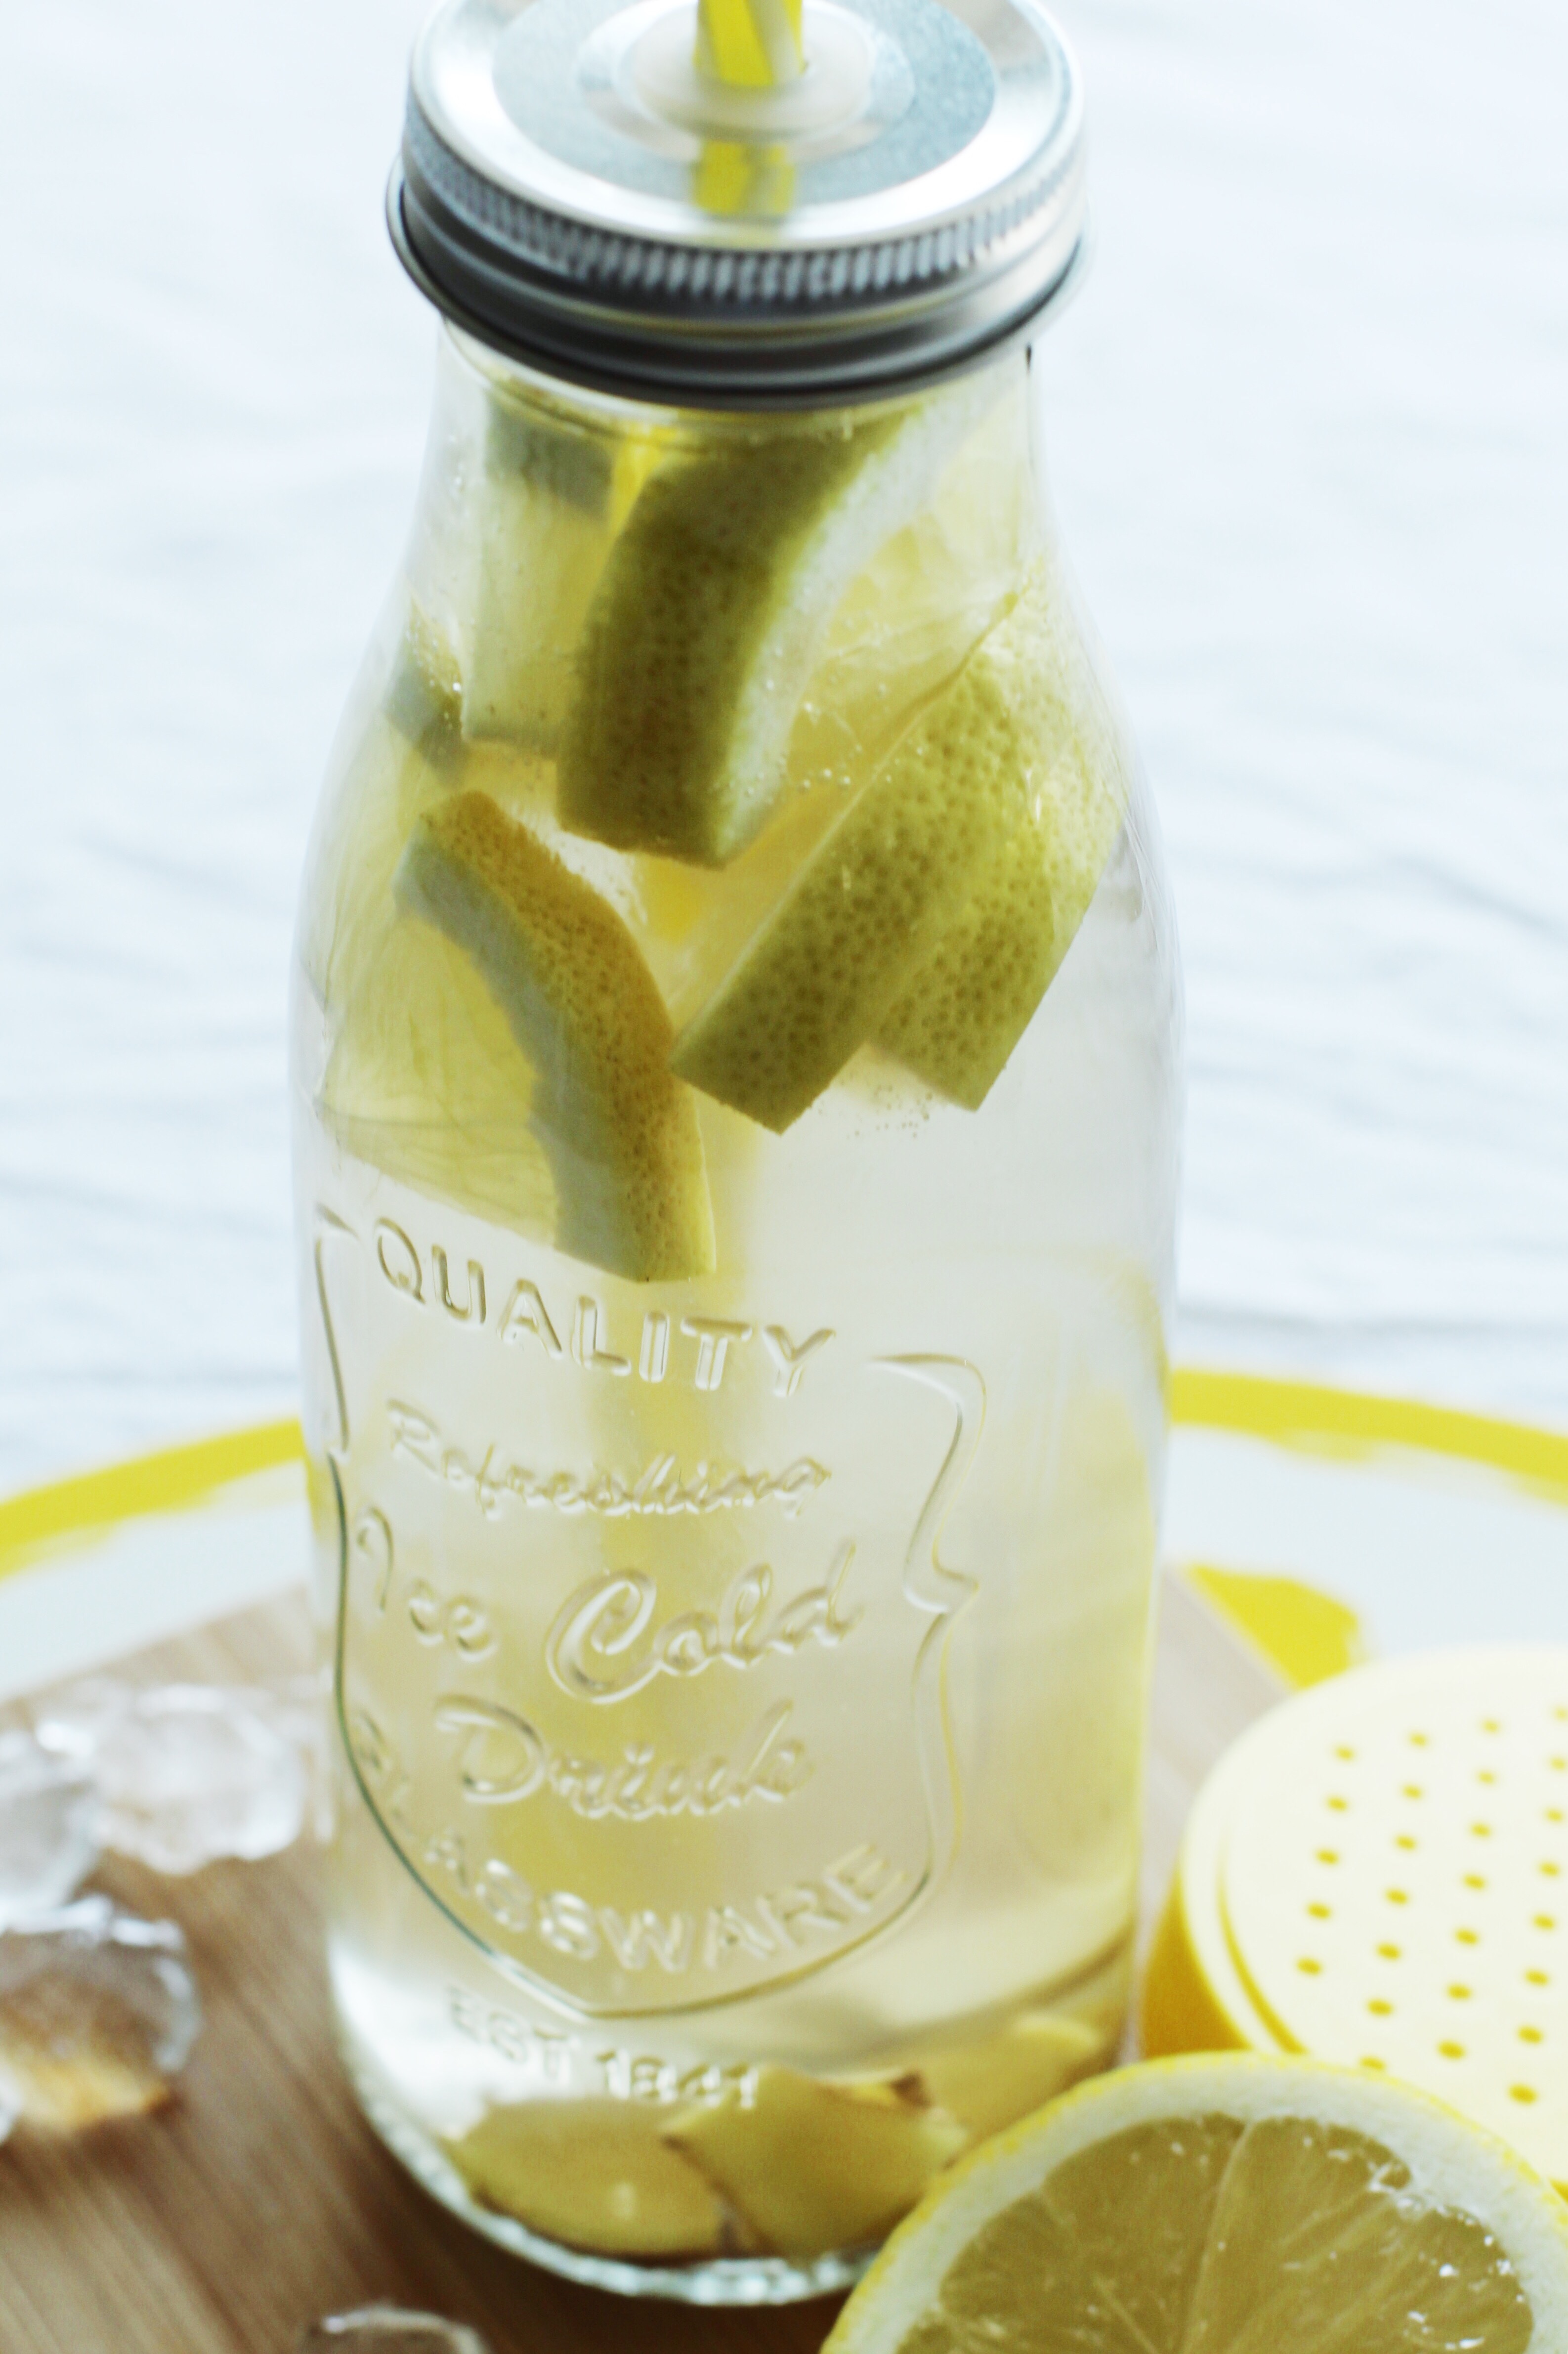 Erfrischende Ingwer-Zitronen-Limonade mit selbst gemachtem Ingwer-Sirup ...